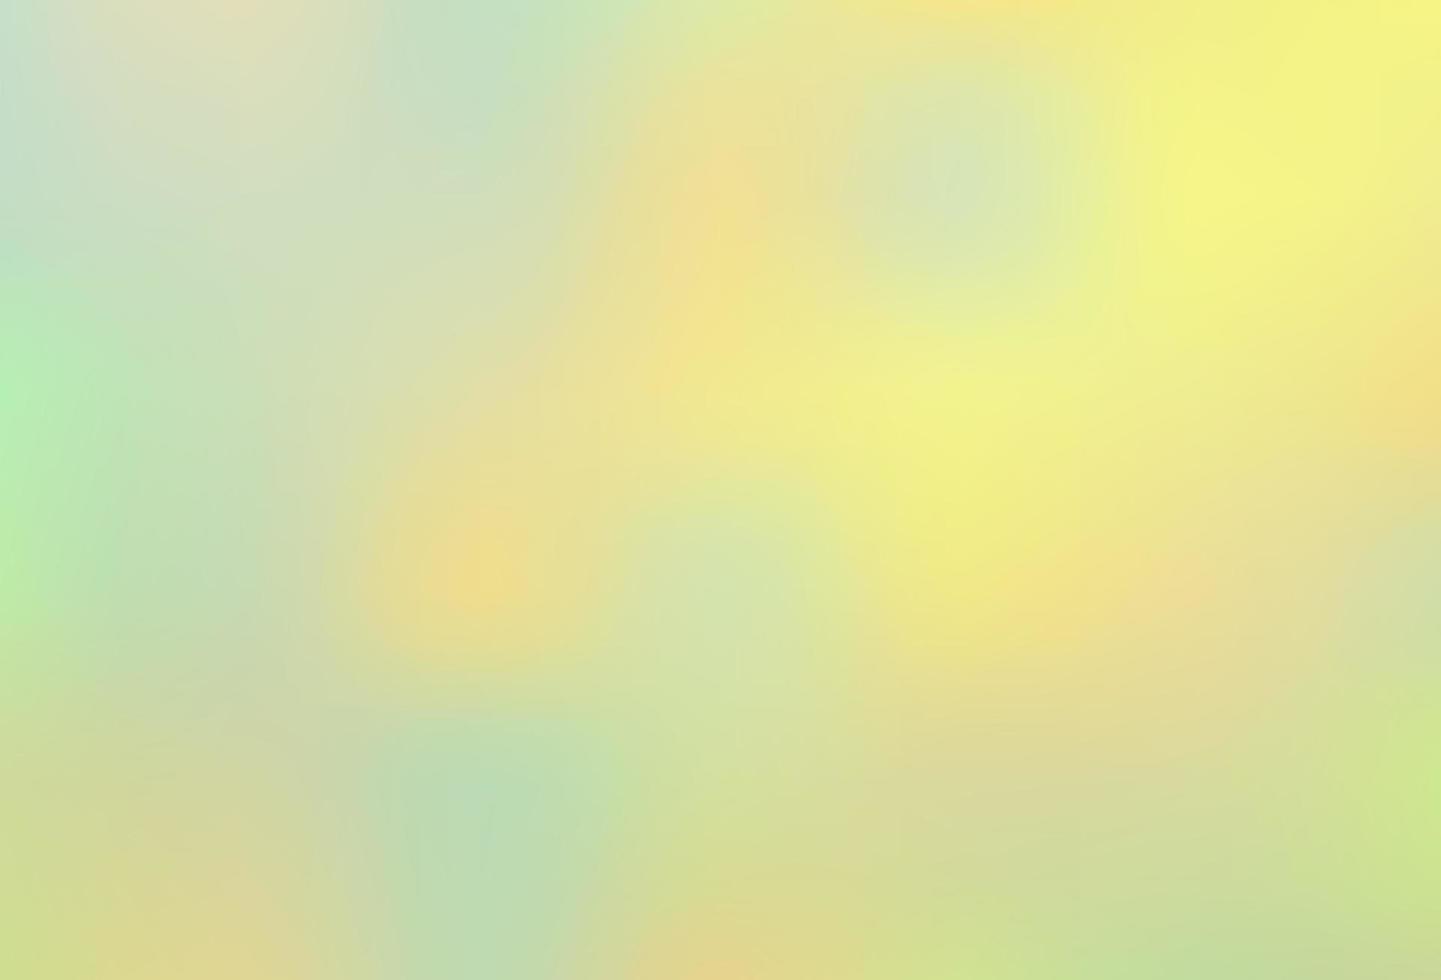 hellgrüner, gelber Vektor abstrakter unscharfer Hintergrund.